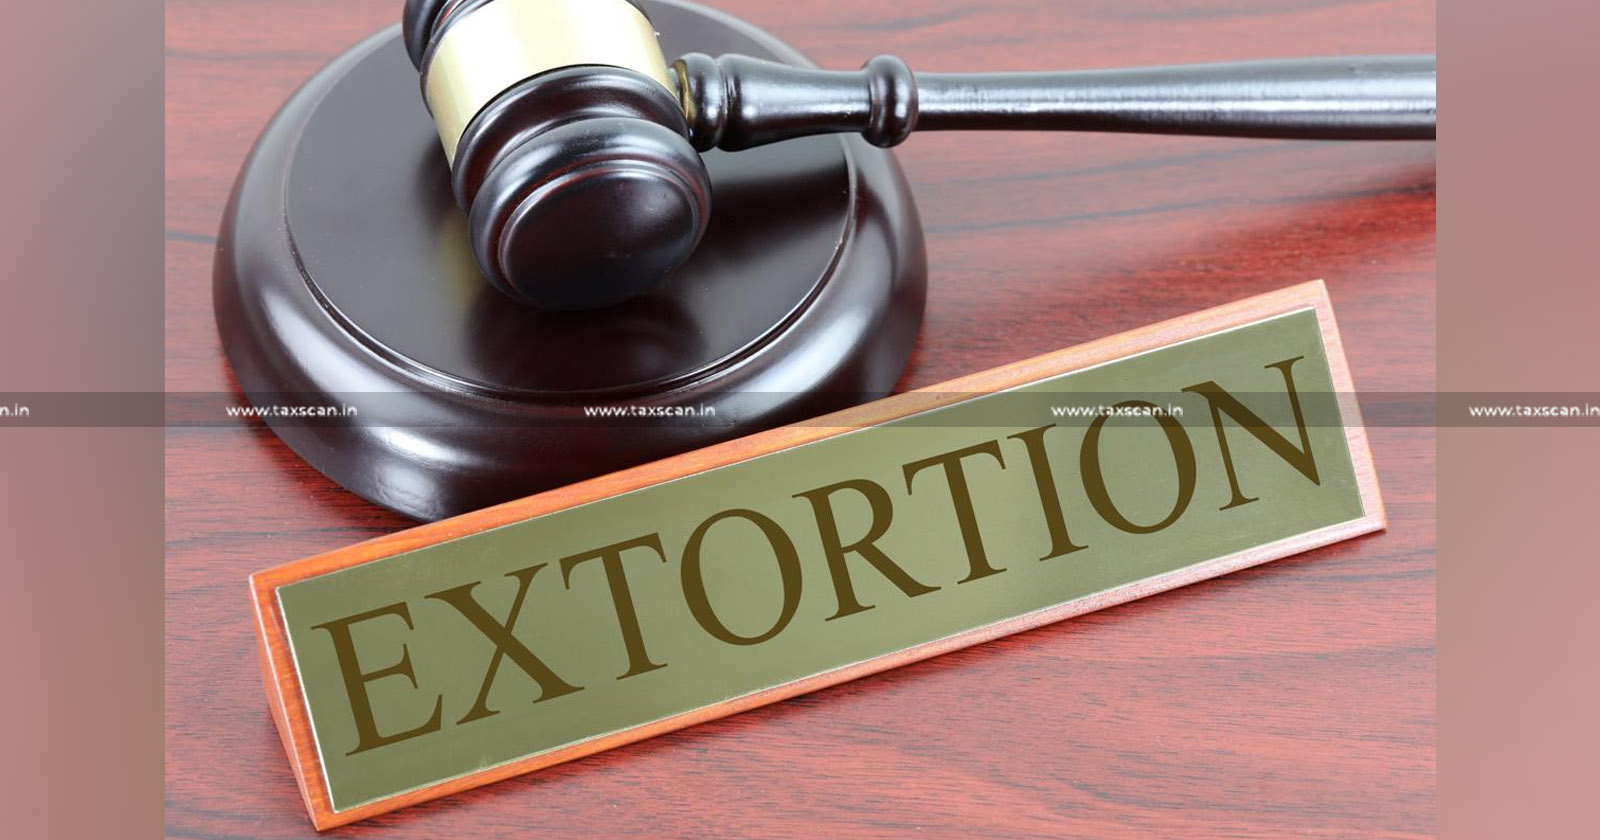 Sales Tax Inspector Attempts to Extort - Sales Tax Inspector - Sales Tax - Extort - GST Tribunal Judge - GST Tribunal - taxscan